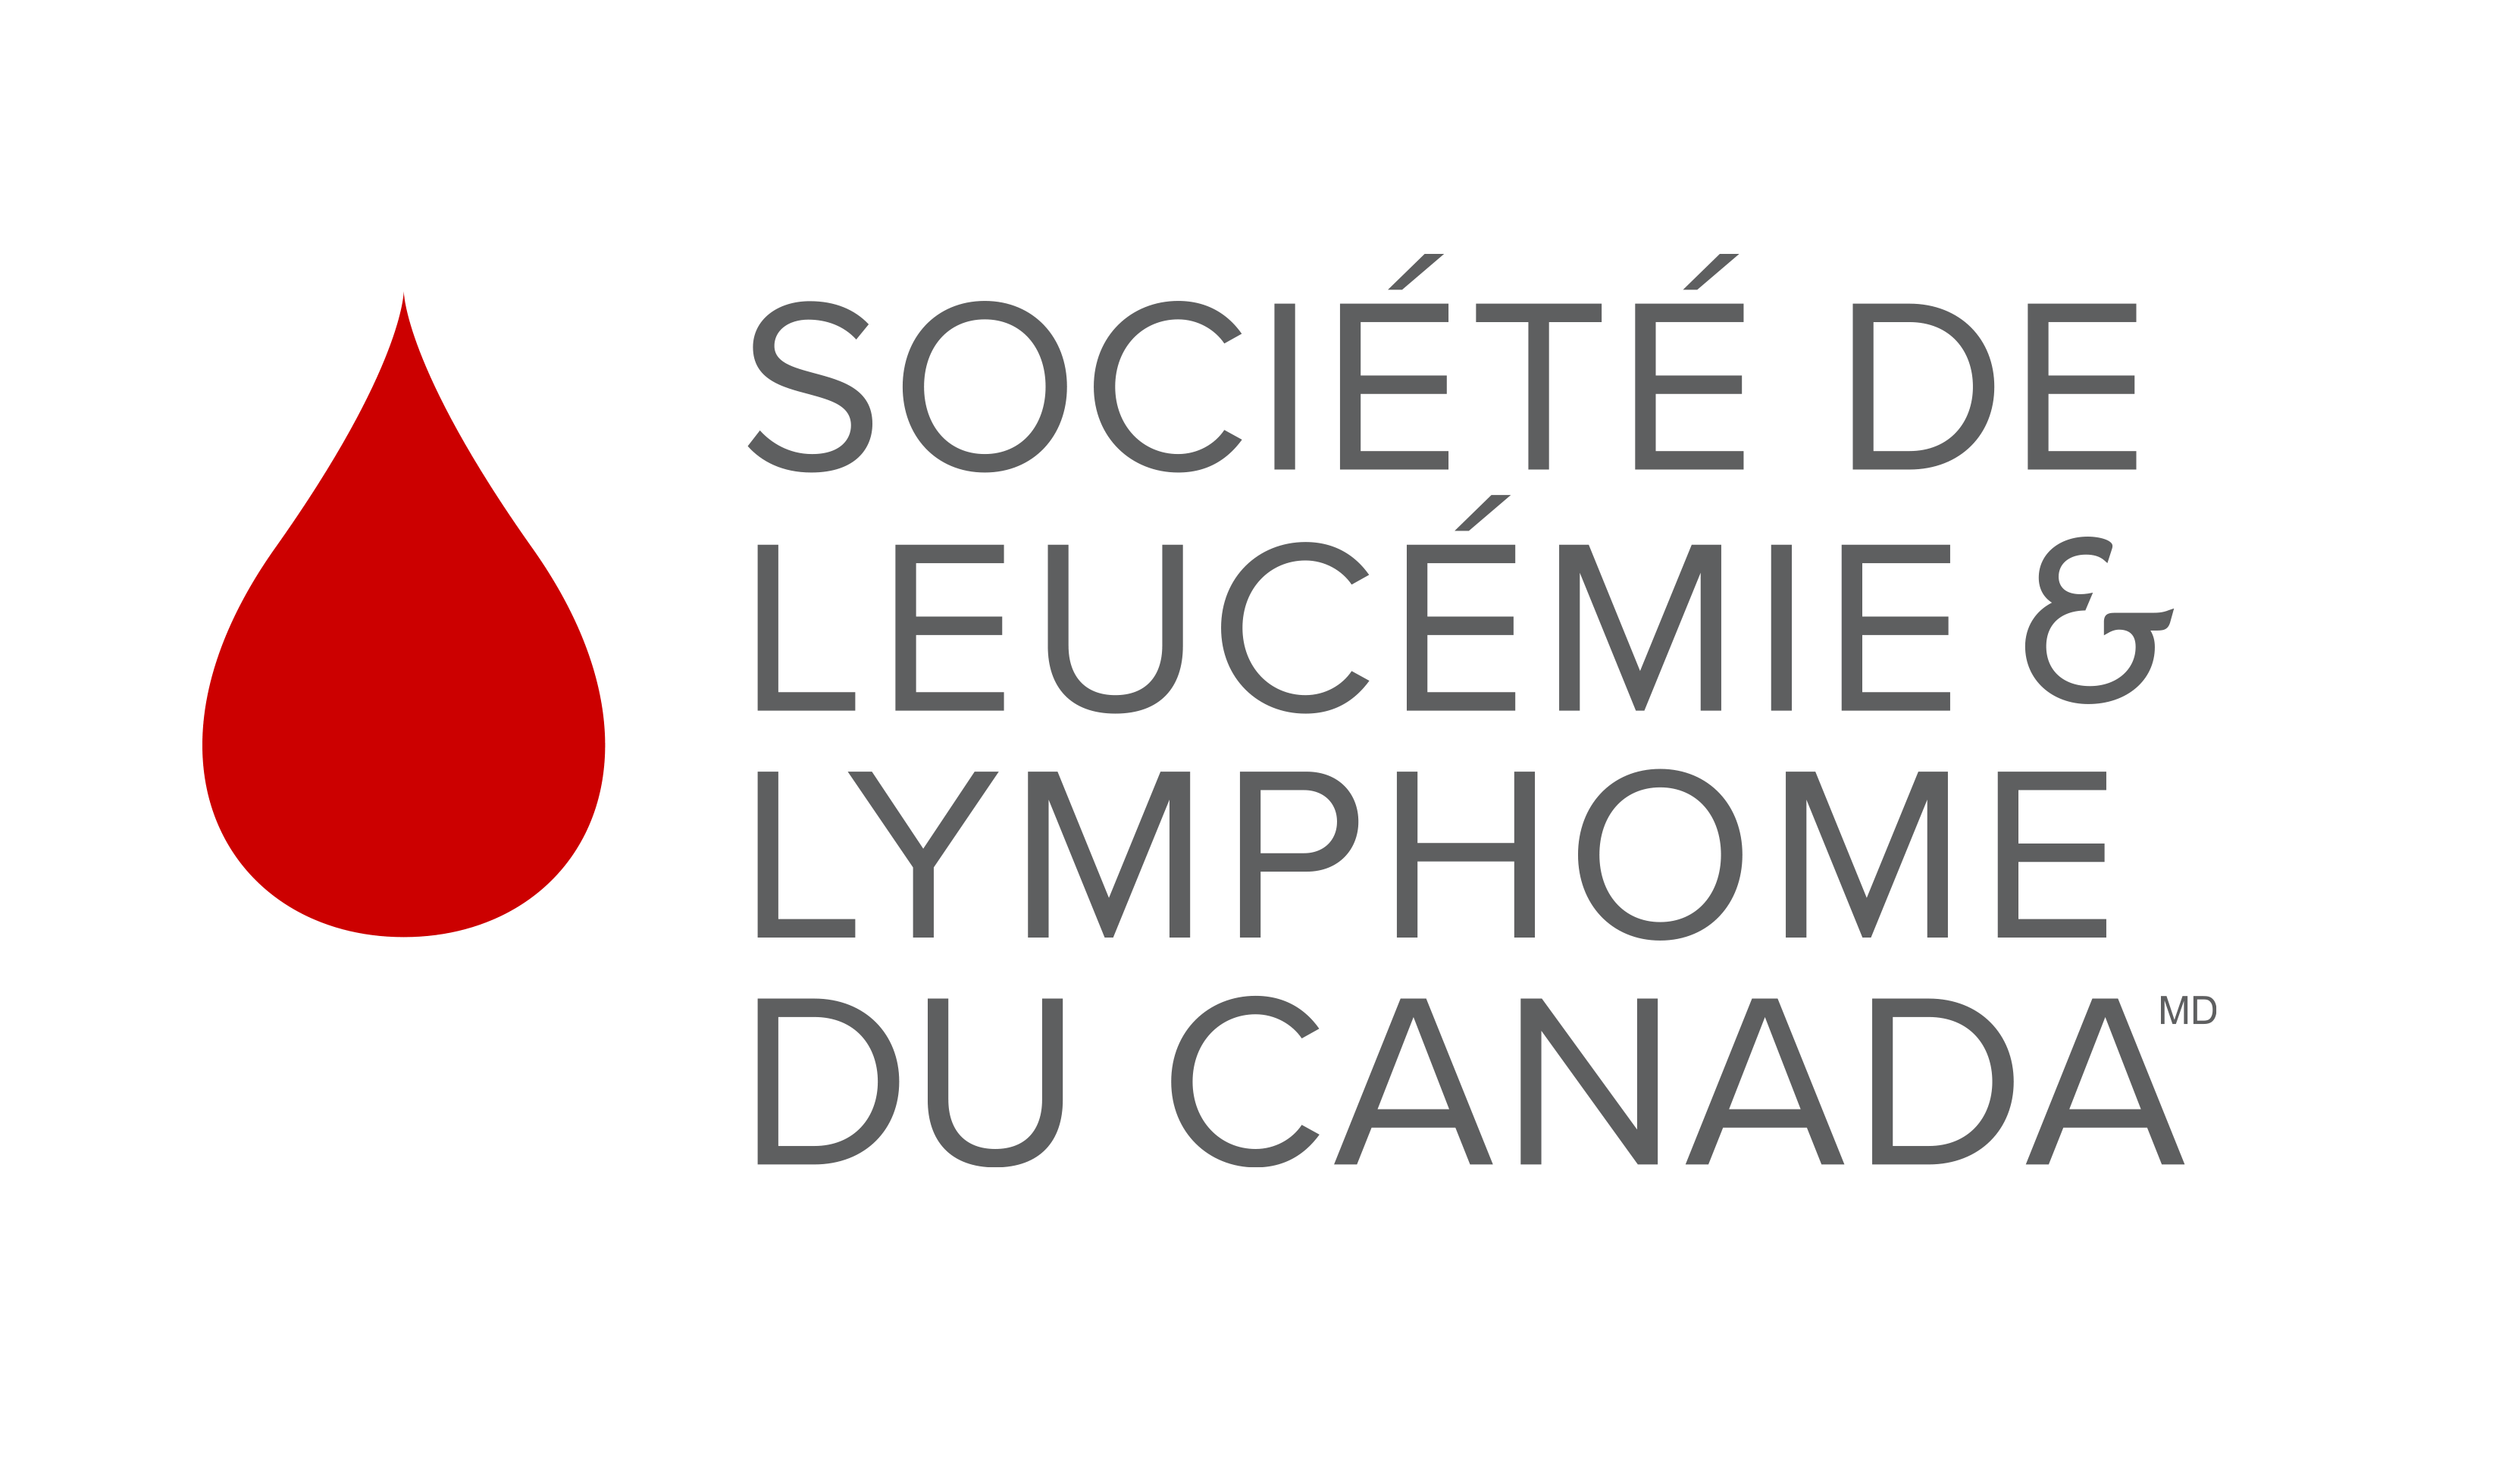 Société de leucémie et lymphome du Canada